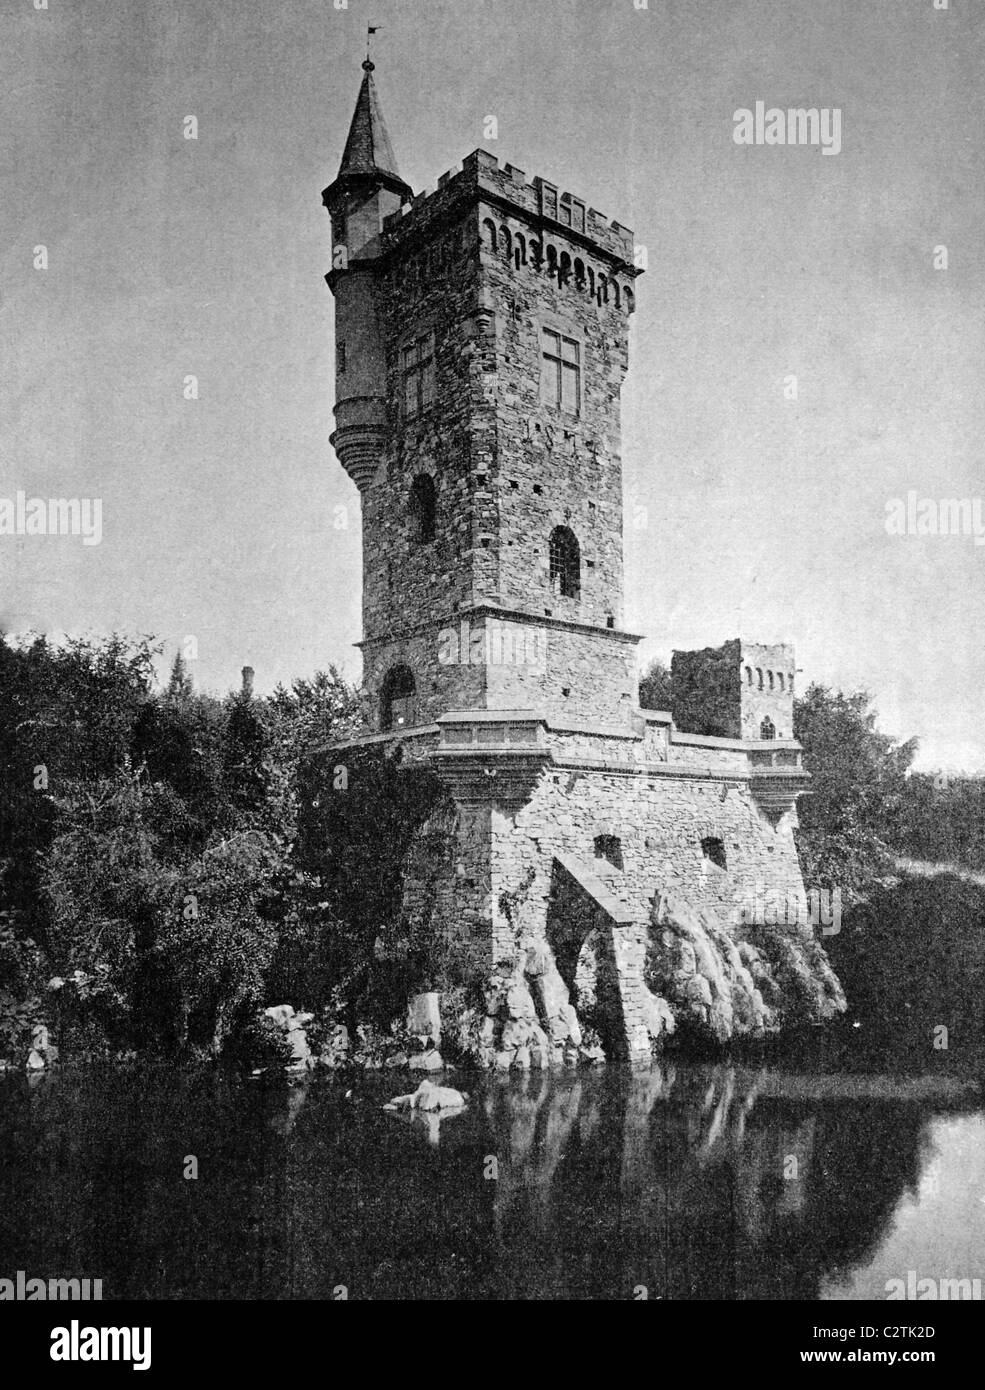 Frühe autotype der Binger Maeuseturm Tower, UNESCO-Weltkulturerbe, Bingen am Rhein, Rheinland-Pfalz, Deutschland, histo Stockfoto